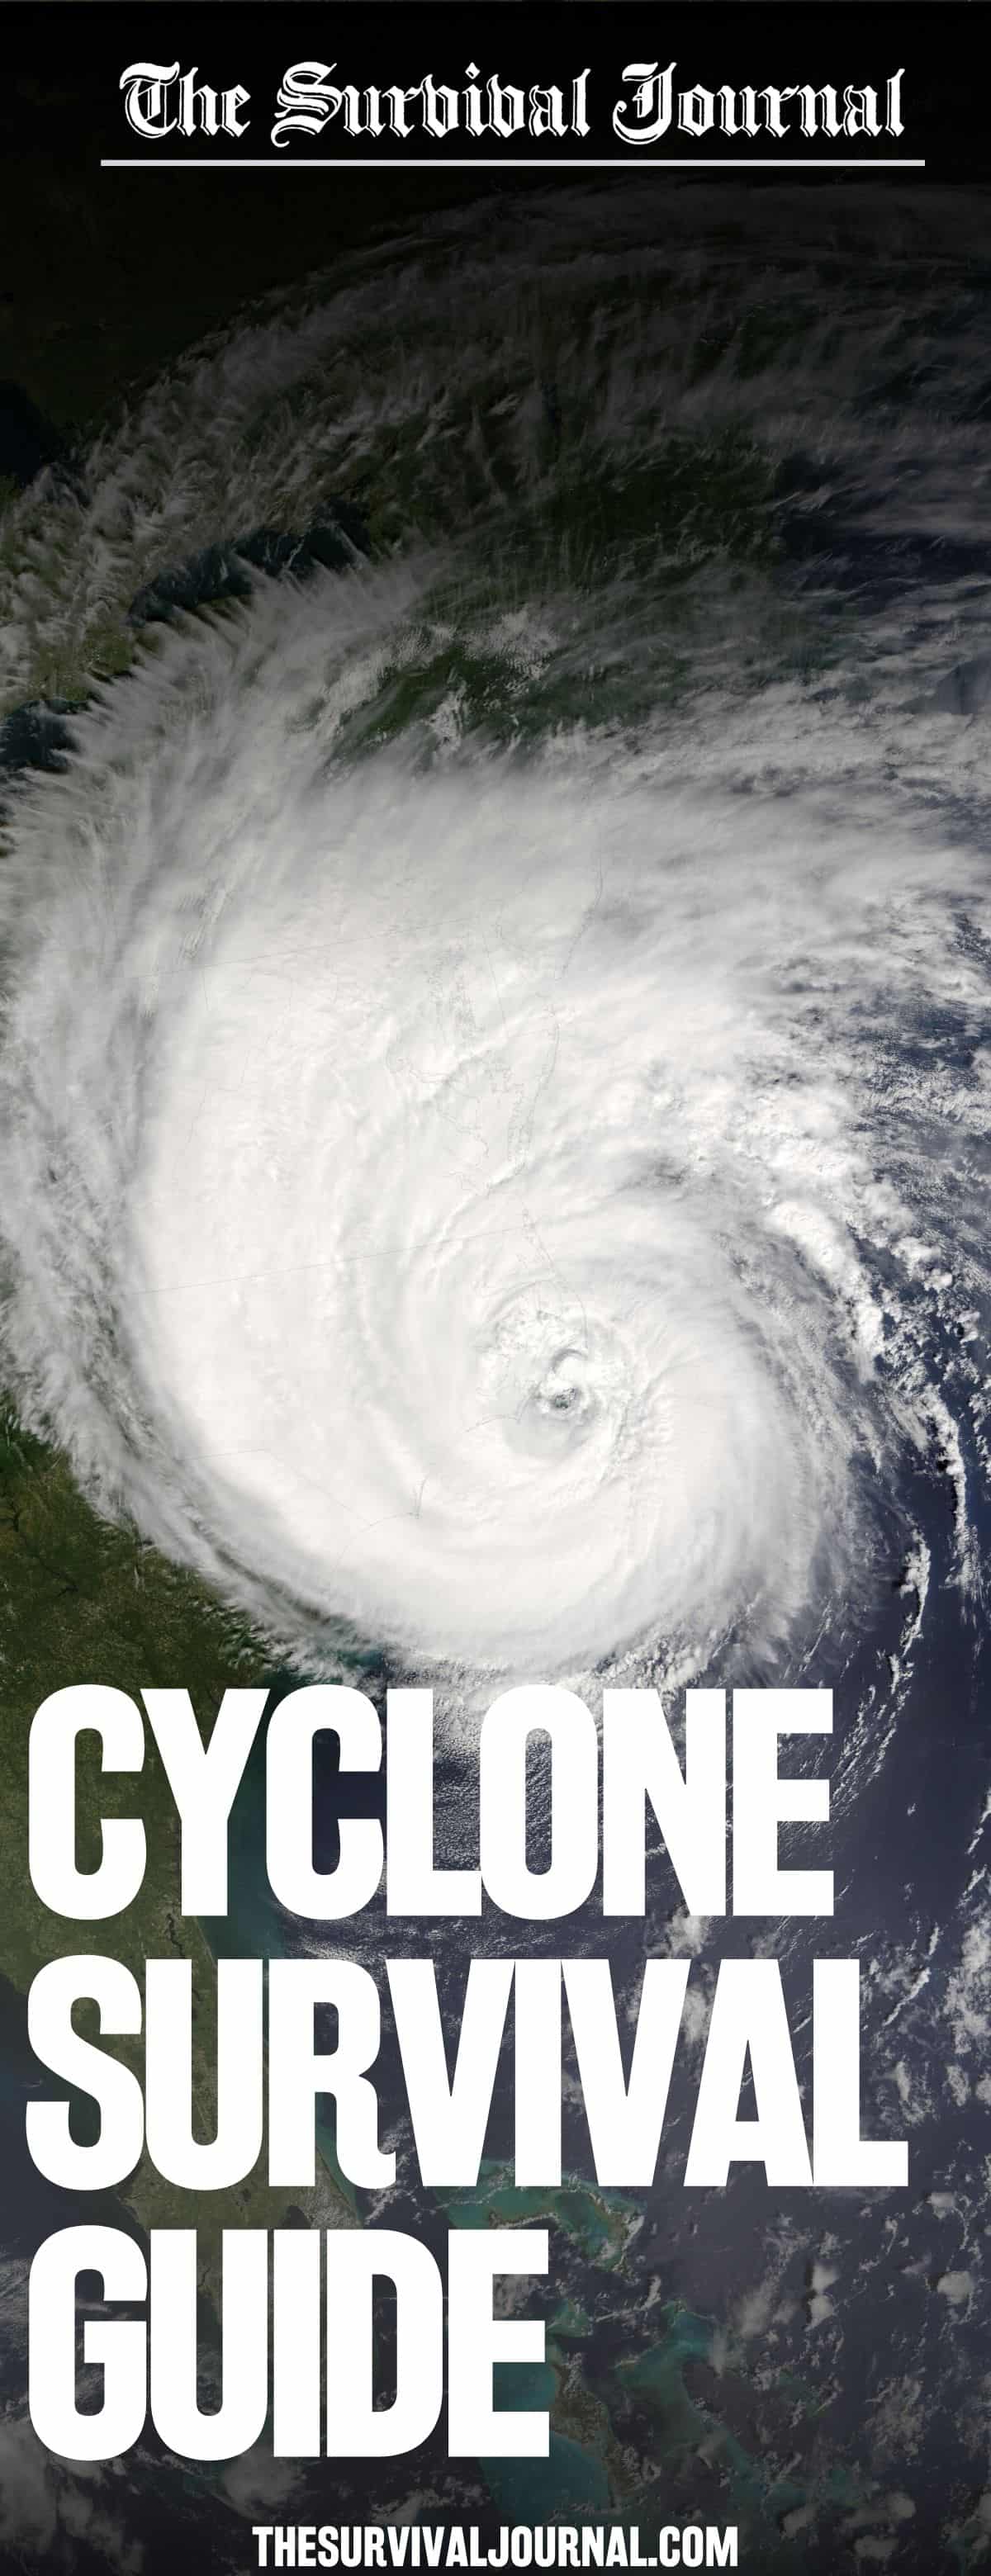 cyclone survival guide